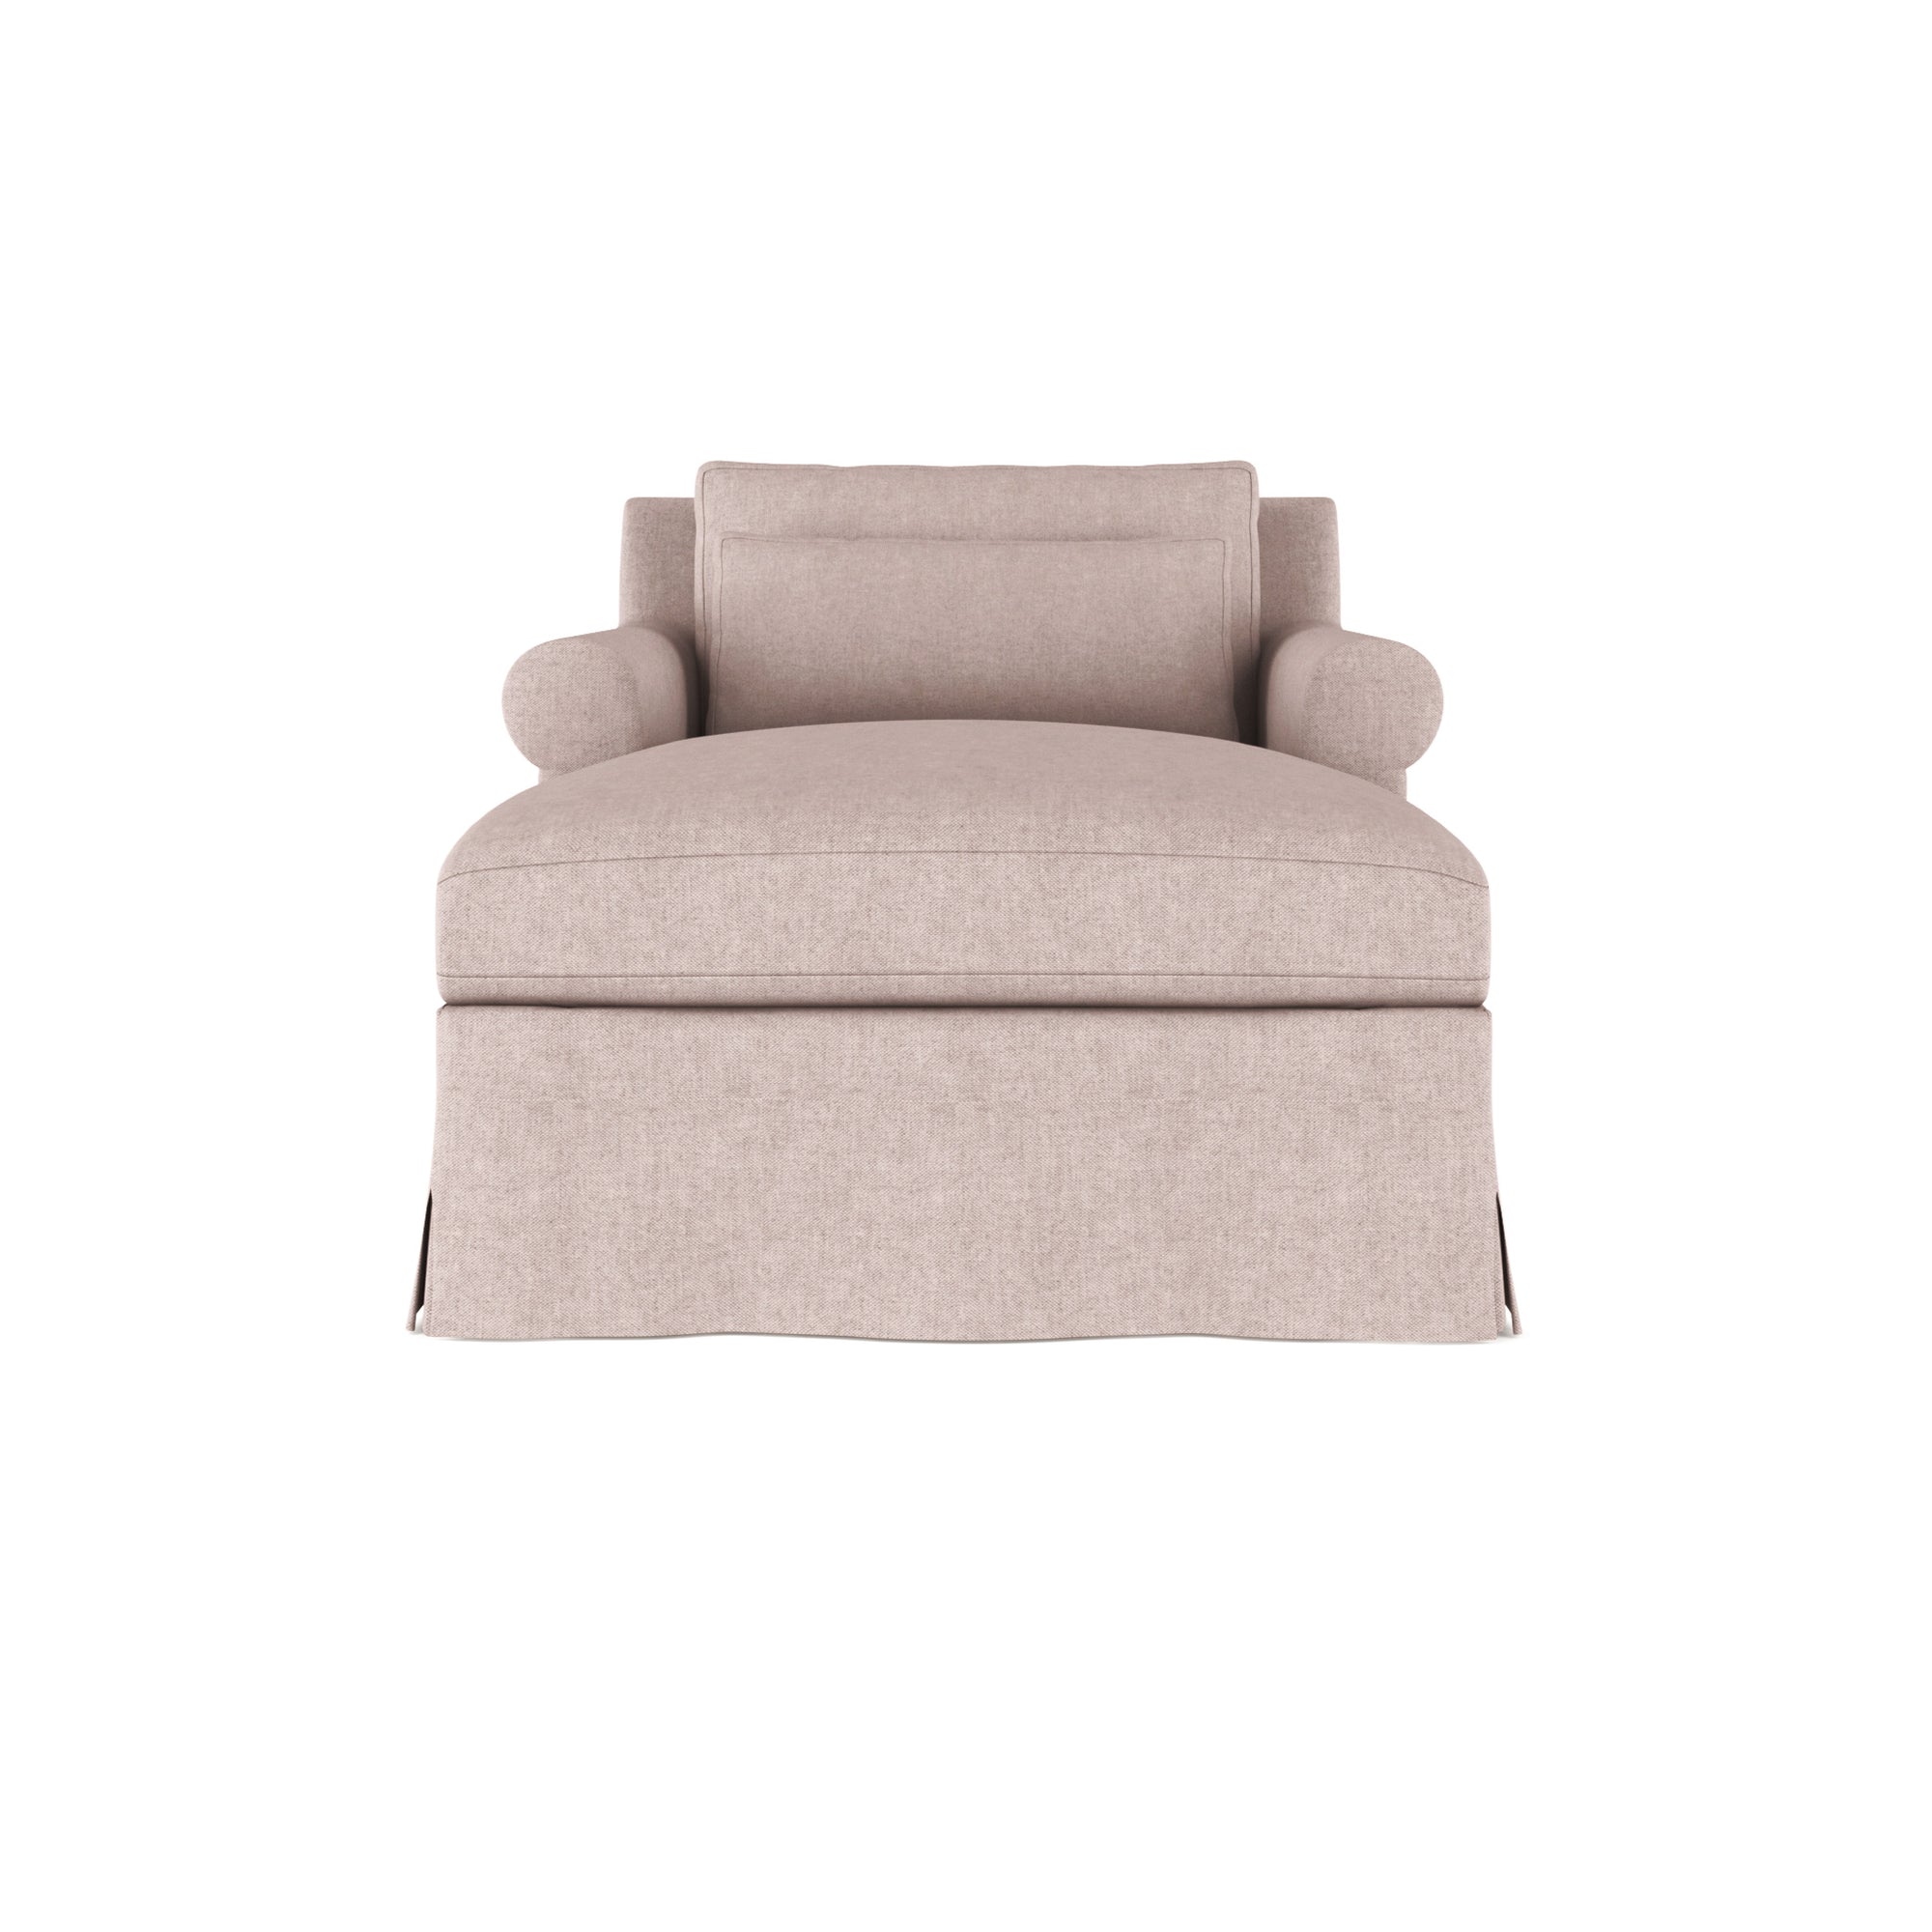 Ludlow Chaise - Blush Plush Velvet